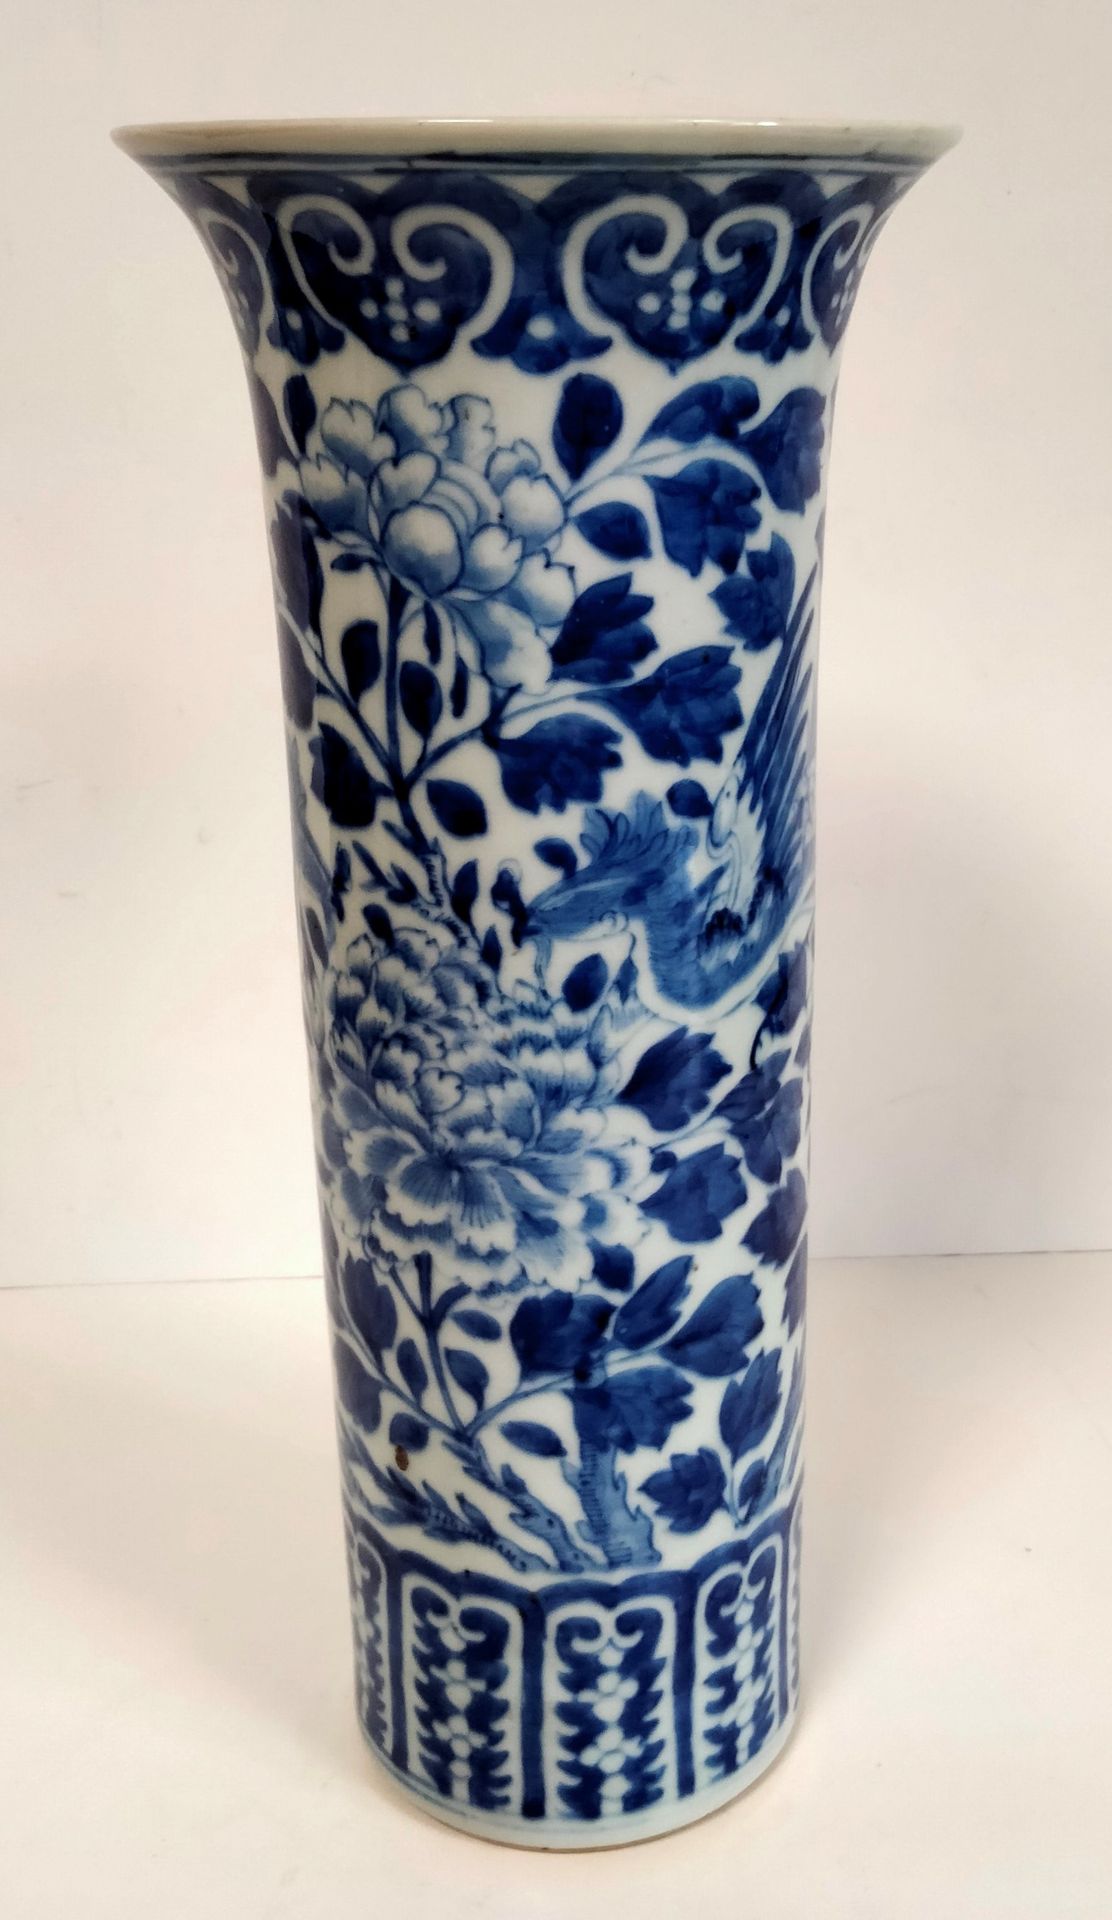 Null Jarrón de porcelana azul y blanca, China,
siglo XIXDecorado con fénix sobre&hellip;